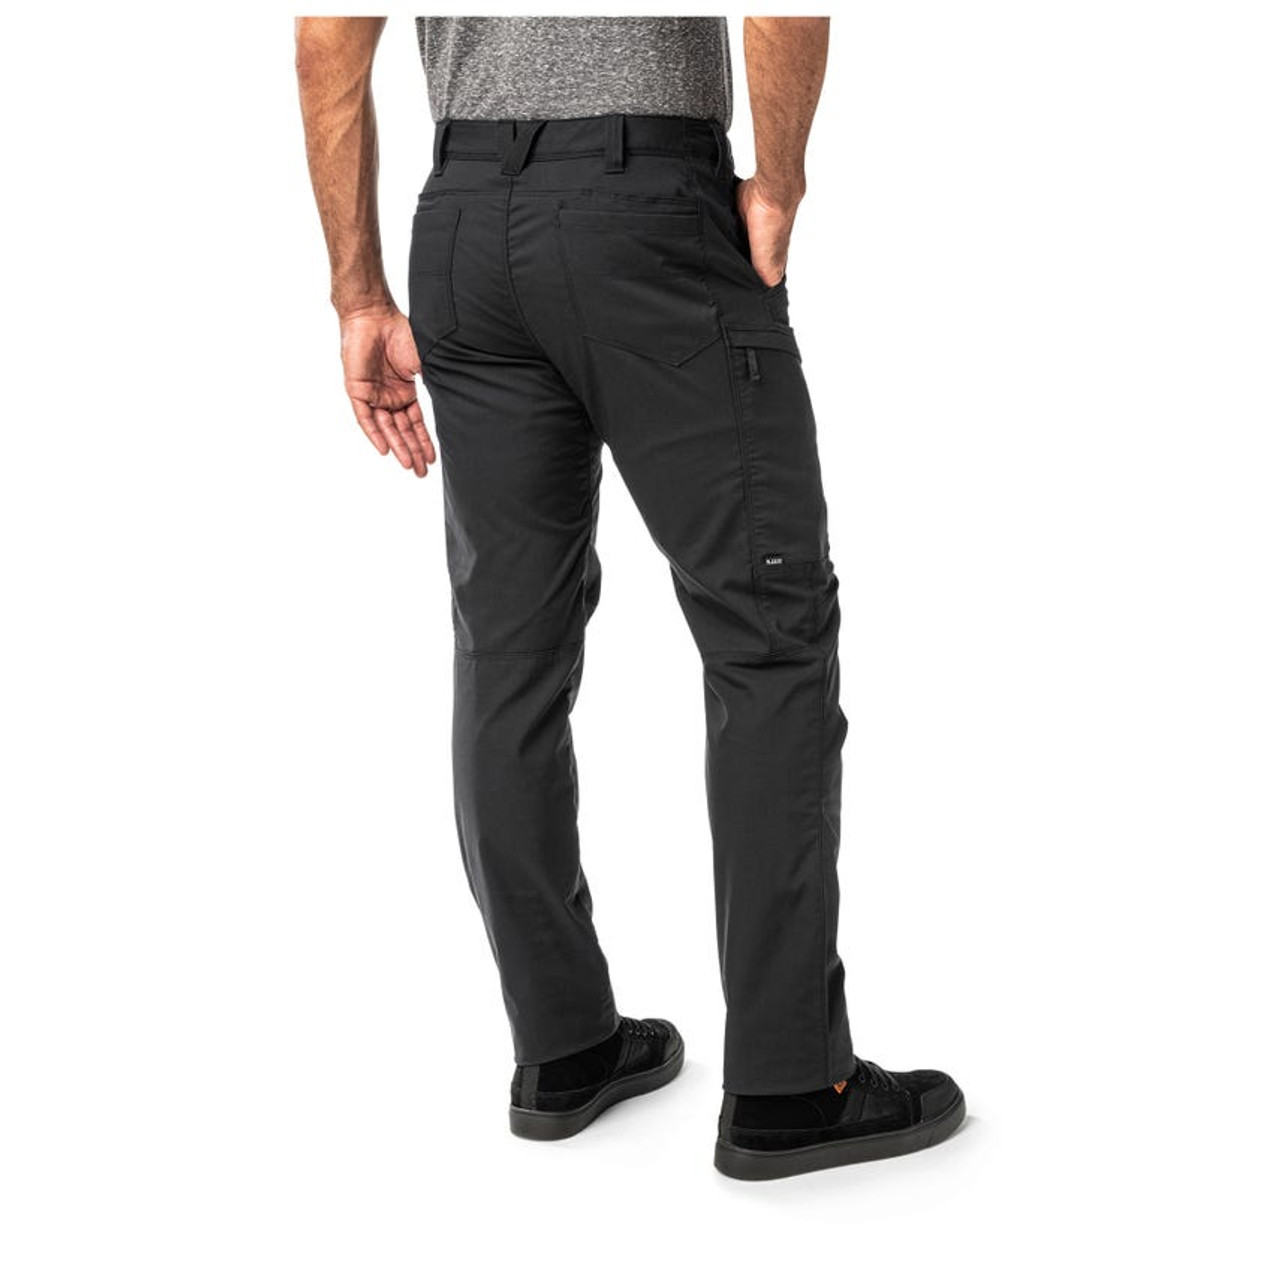 5.11® Ridge Pant: Comfort & Functionality Combined